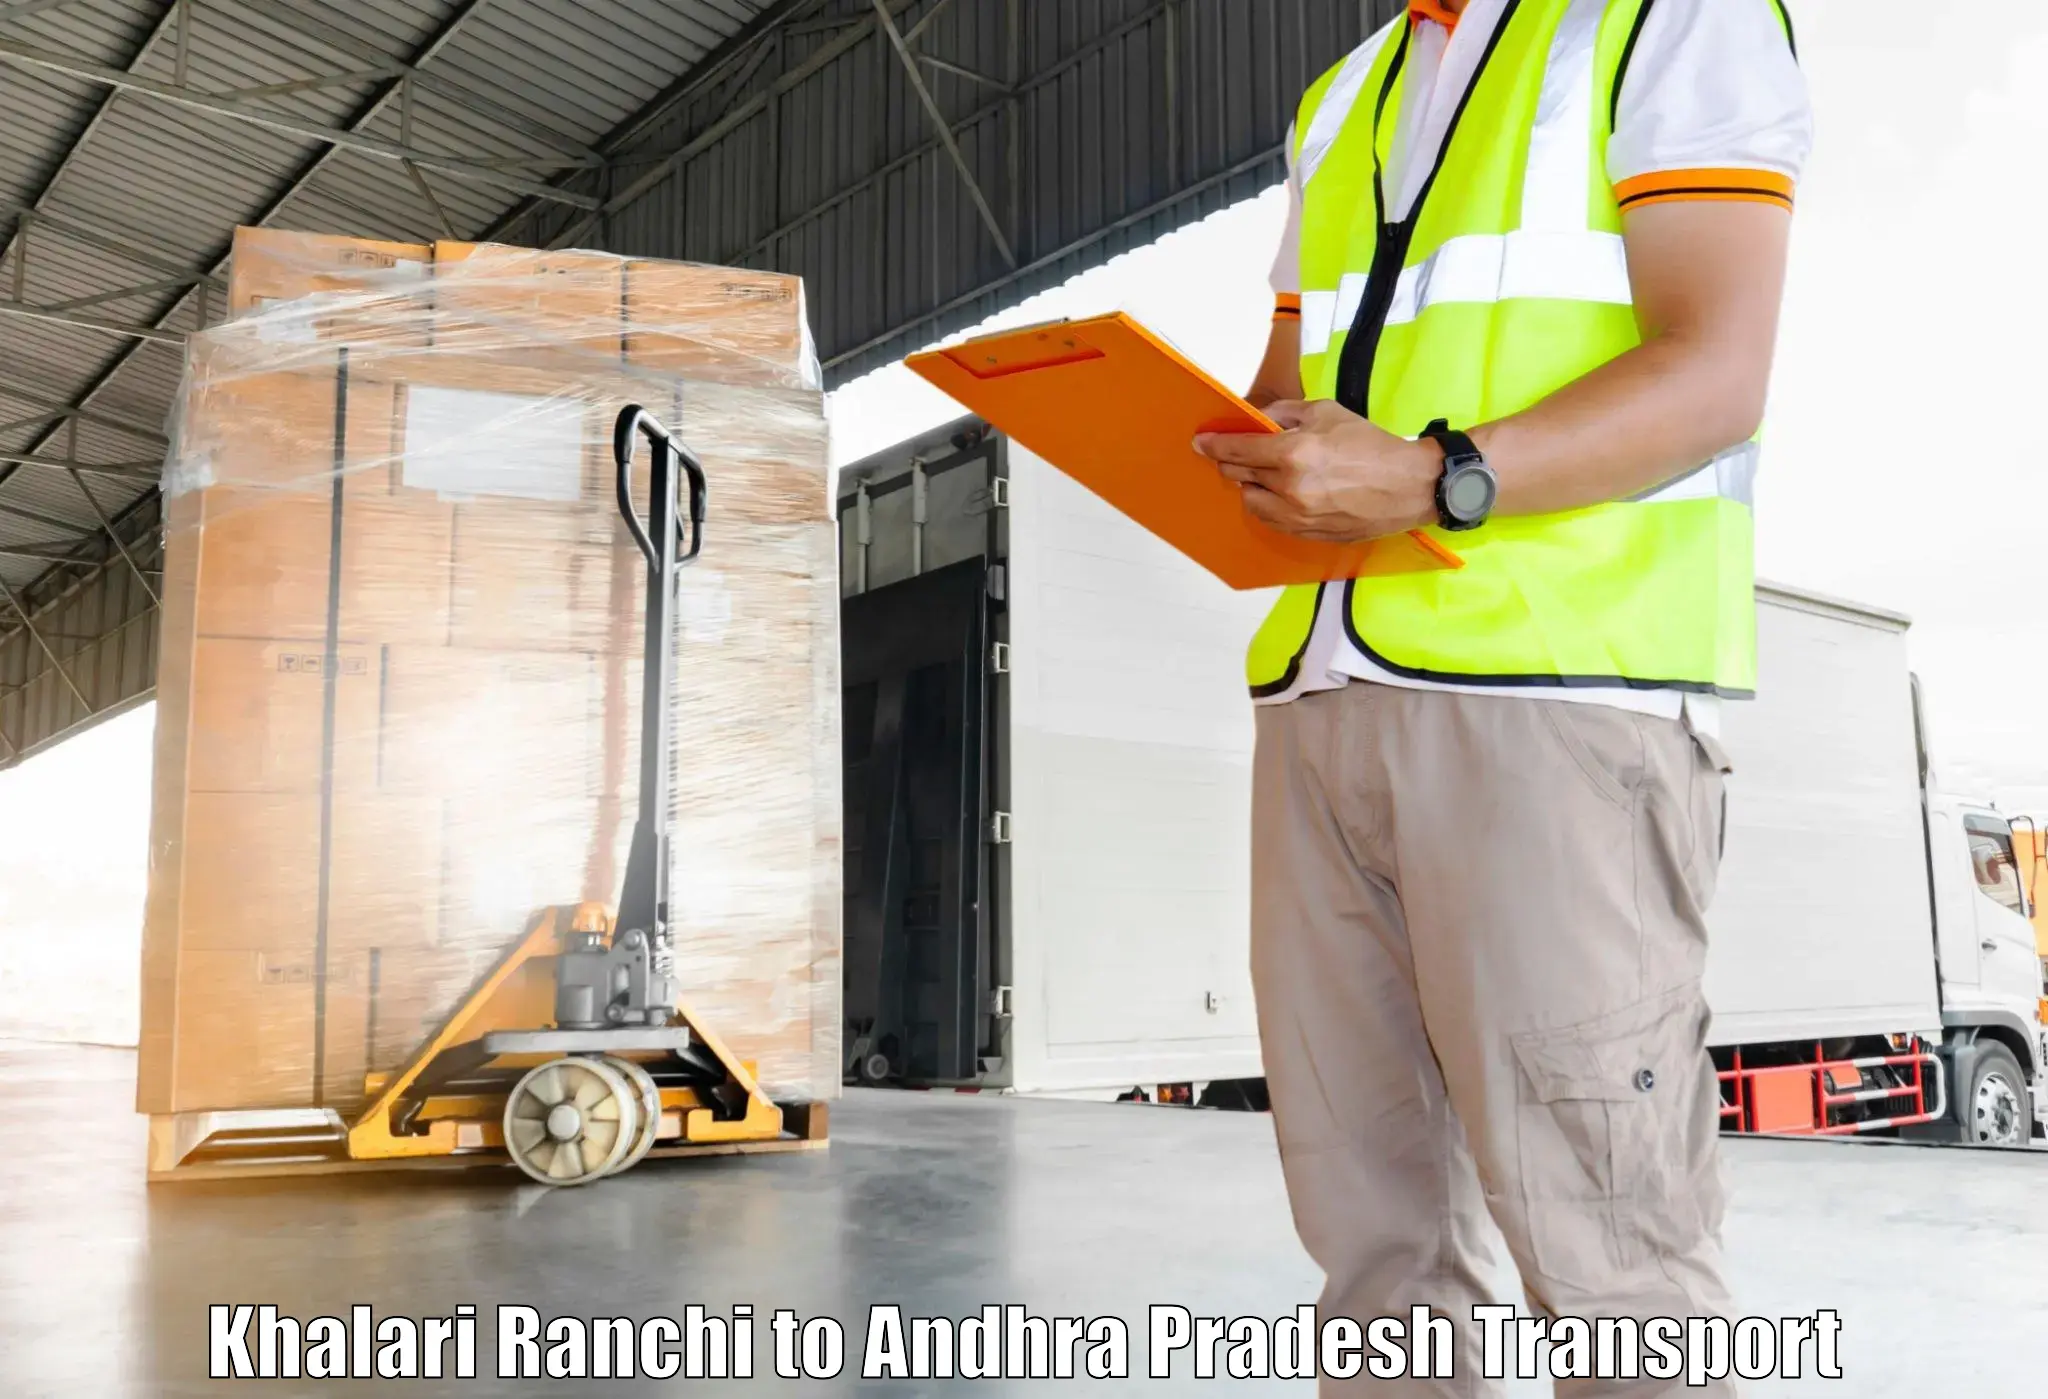 Shipping partner Khalari Ranchi to Malikipuram